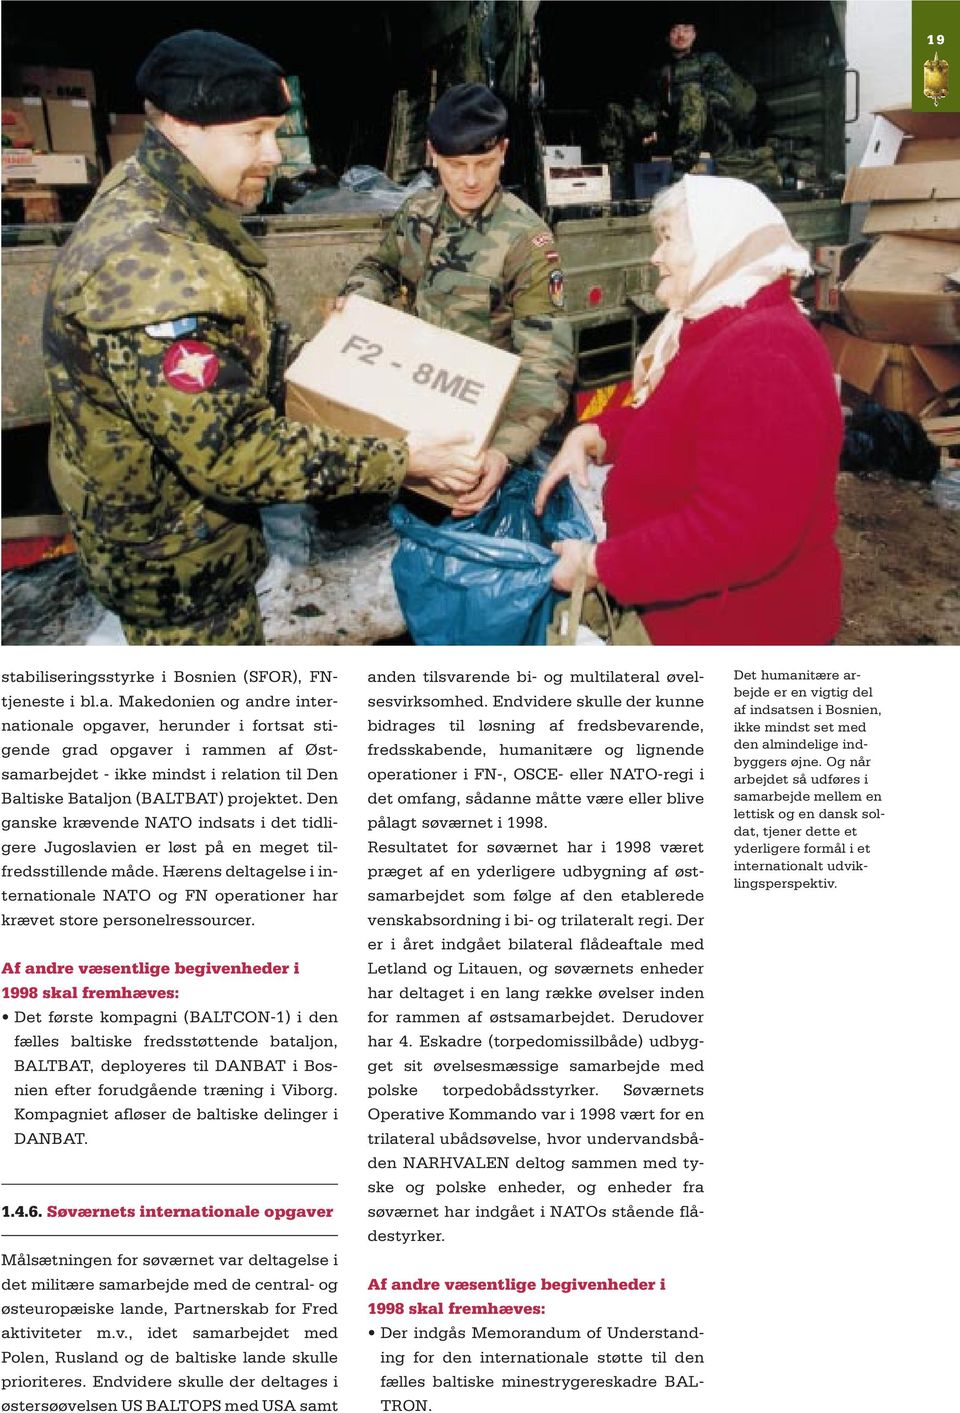 Af andre væsentlige begivenheder i 1998 skal fremhæves: Det første kompagni (BALTCON-1) i den fælles baltiske fredsstøttende bataljon, BALTBAT, deployeres til DANBAT i Bosnien efter forudgående